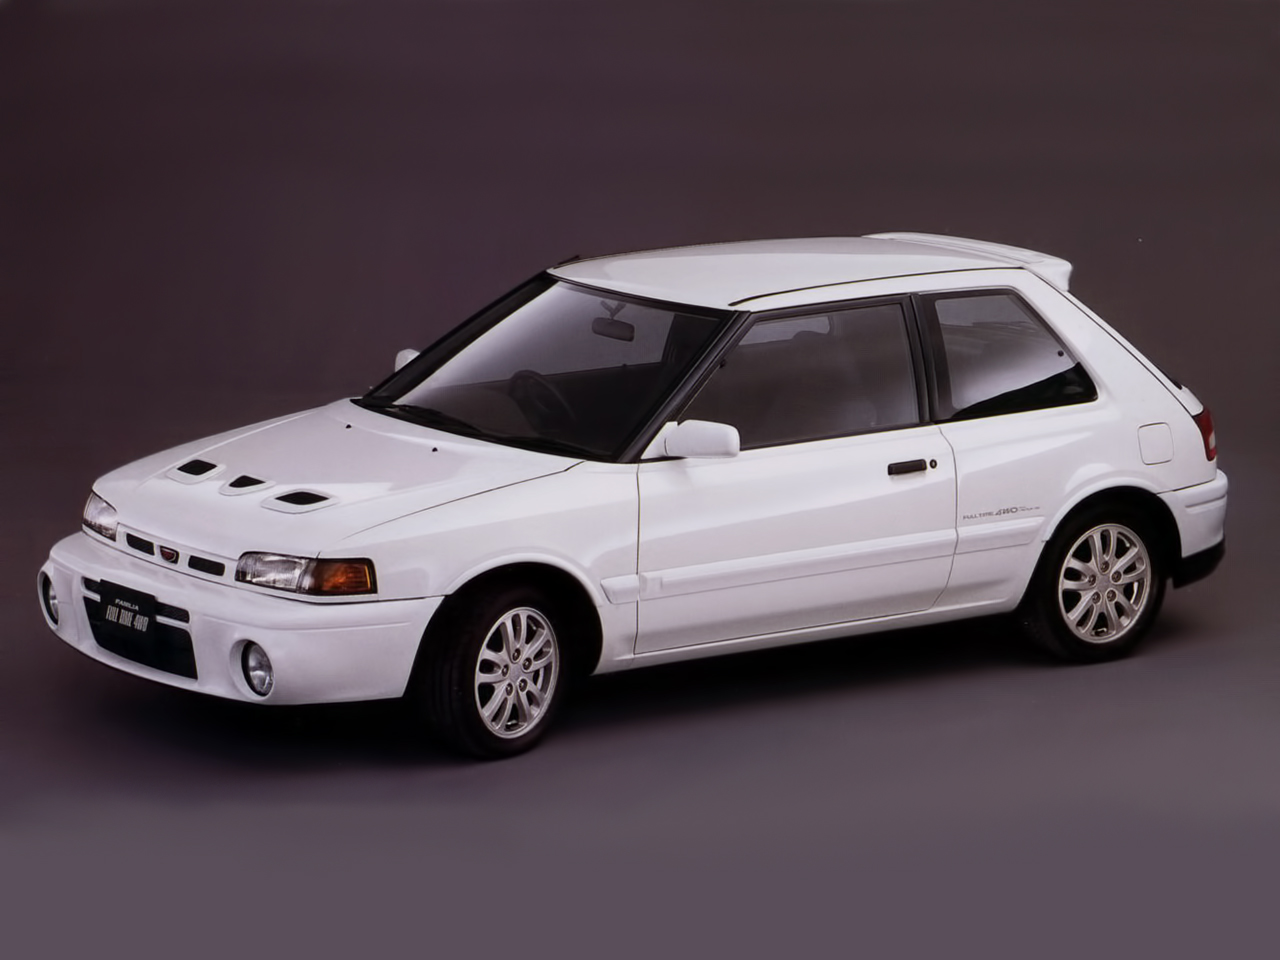 Mazda Familia GT-R 4WD (BG8Z) '1992â€“96. Ð¥Ð°Ñ€Ð°ÐºÑ‚ÐµÑ€Ð¸ÑÑ‚Ð¸ÐºÐ¸ Ð¸Ð·Ð¾Ð±Ñ€Ð°Ð¶ÐµÐ½Ð¸Ñ: